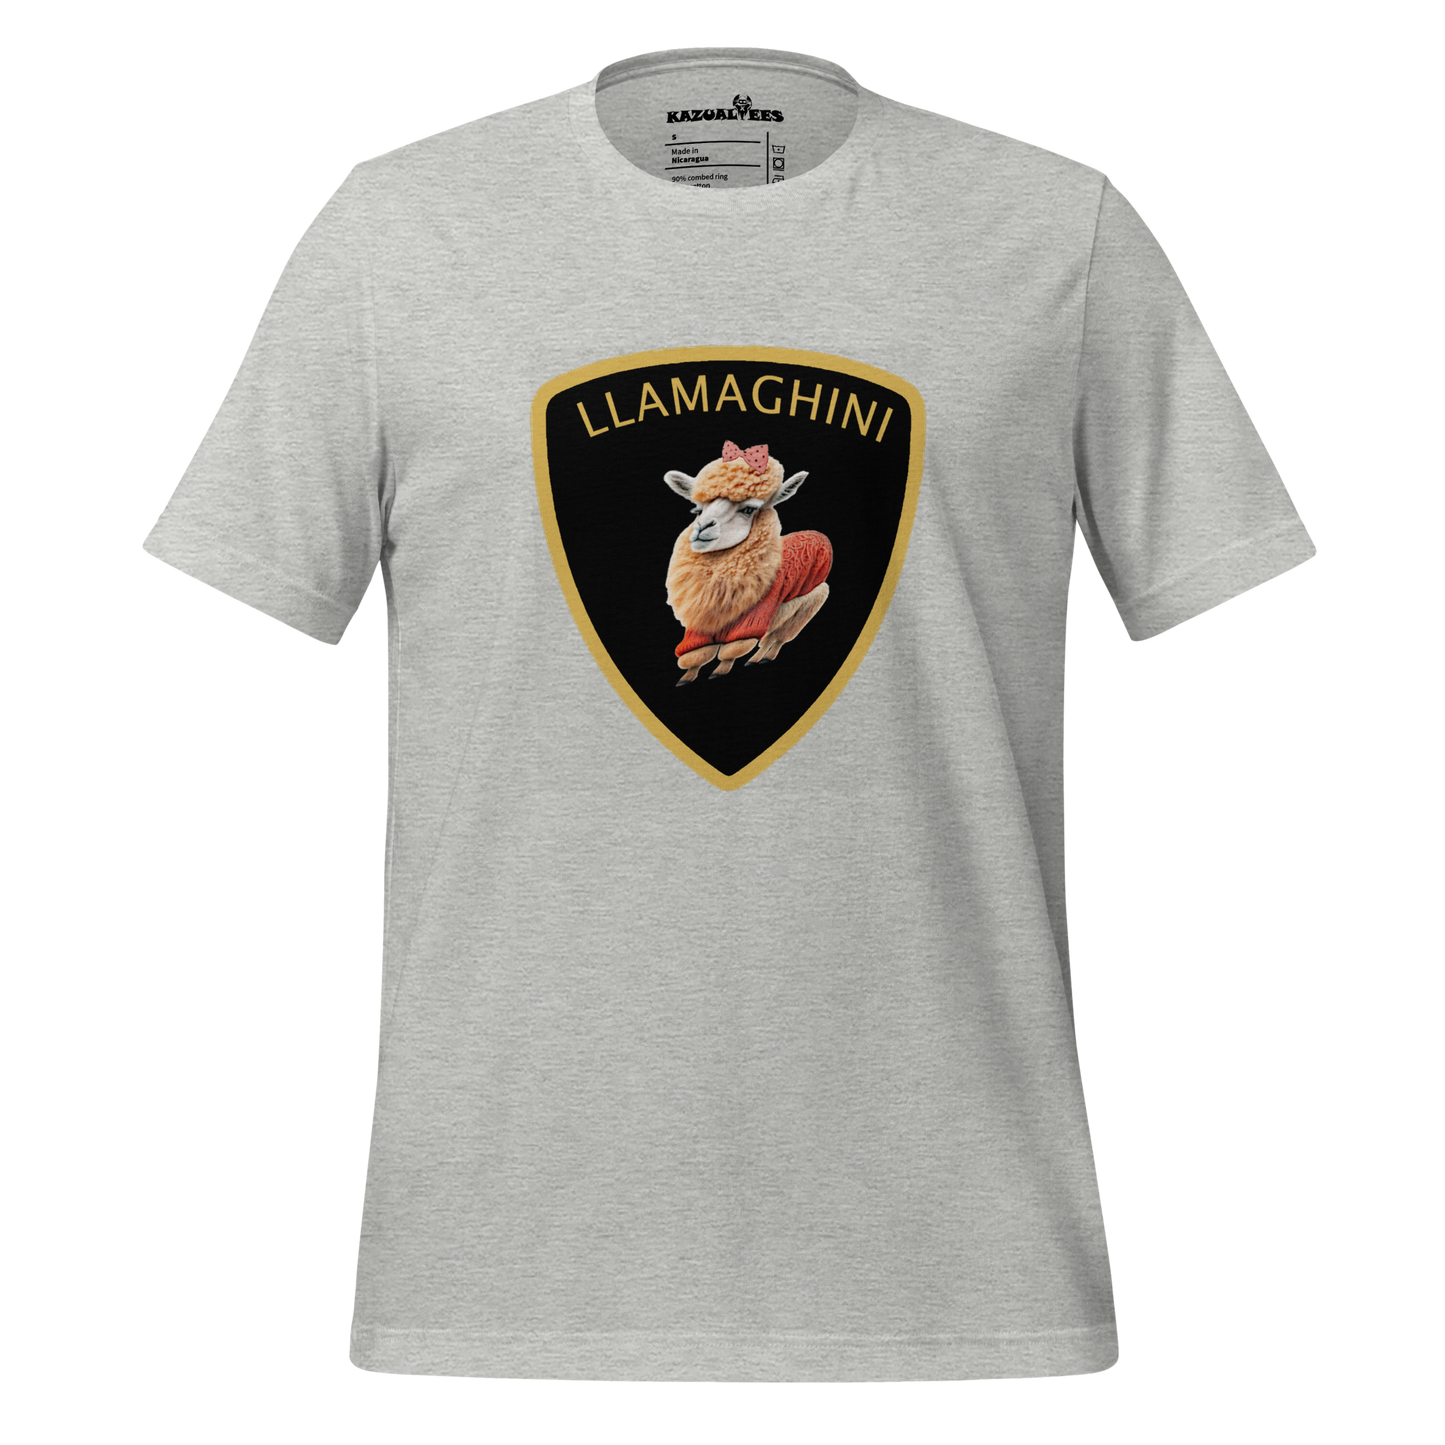 The Llamaghini T-Shirt By KazualTees